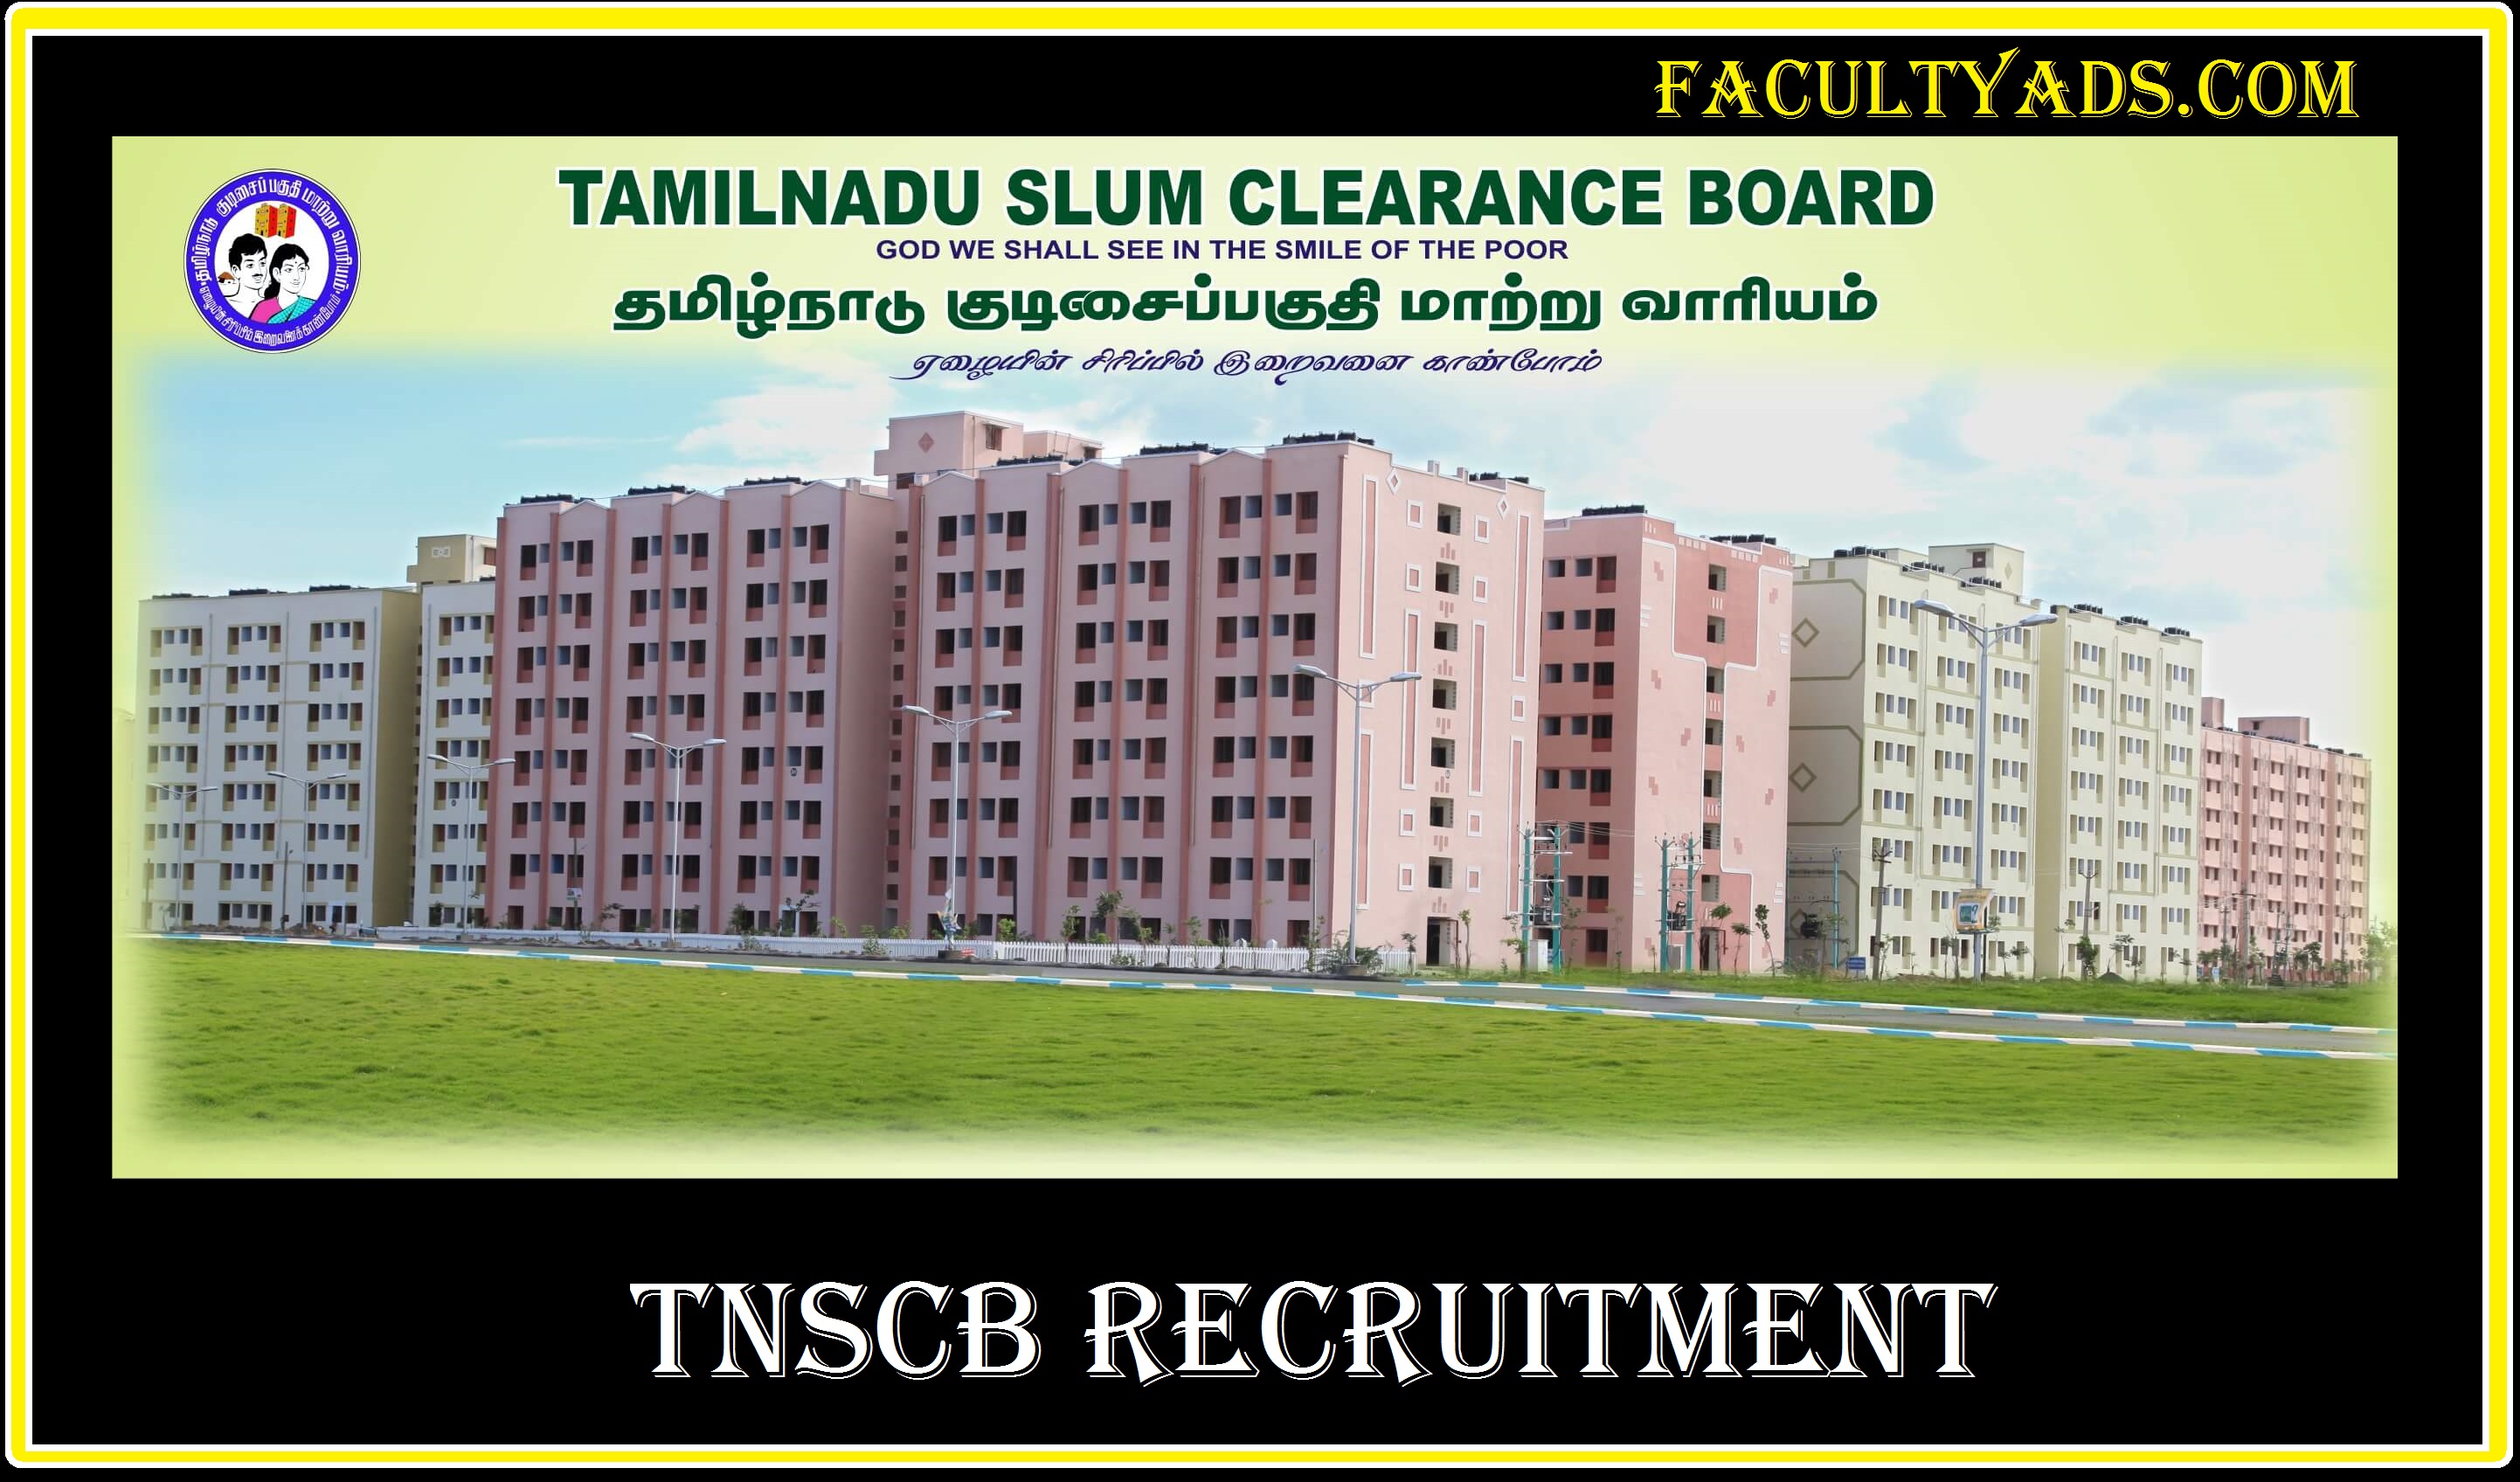 TNSCB Recruitment 2019